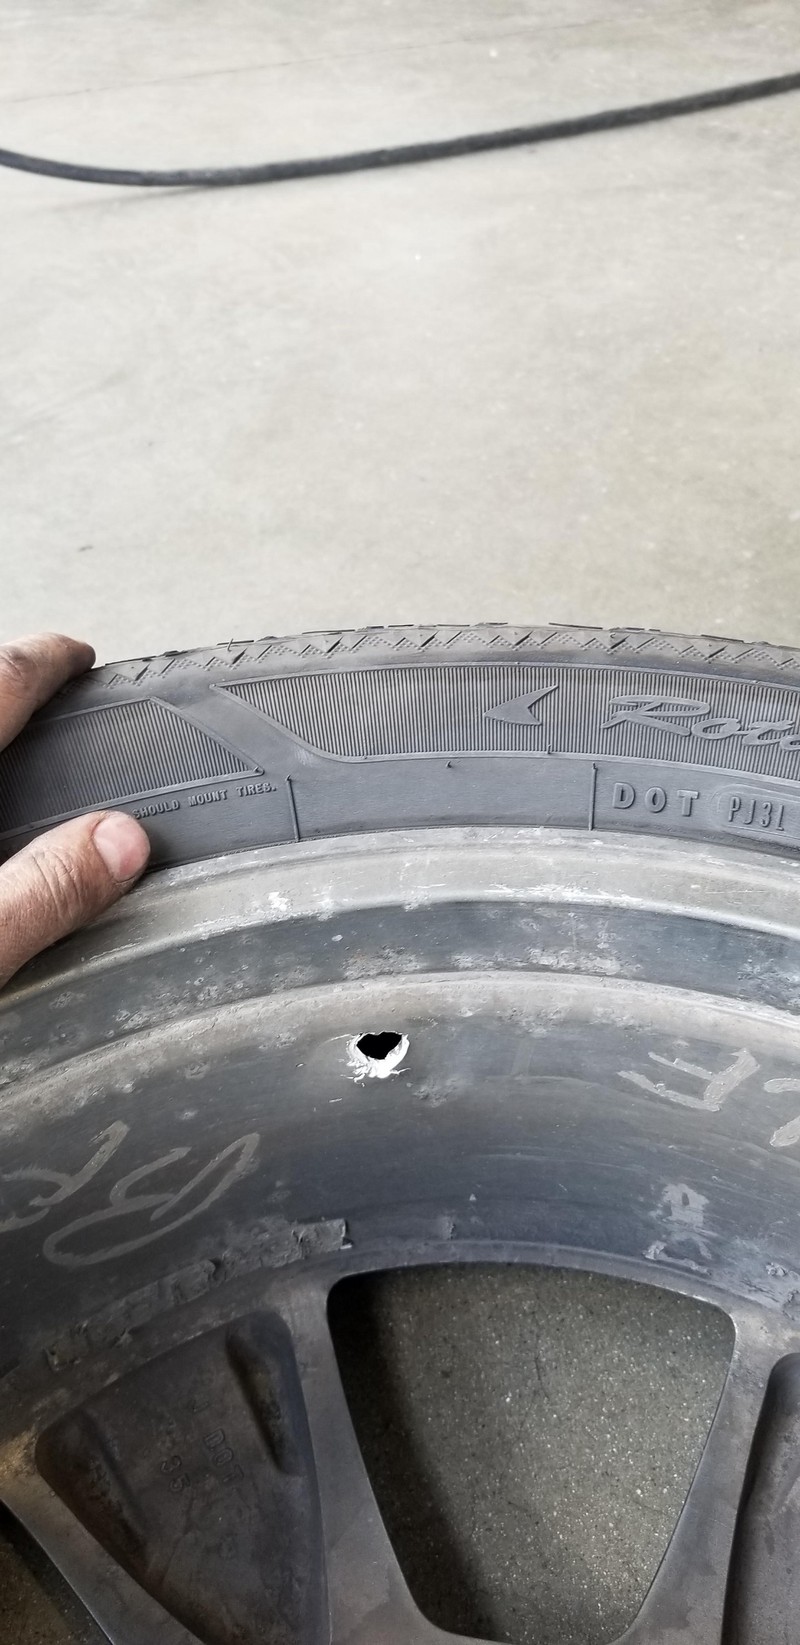 Wir fragen uns, wie dieses Loch in den Reifen gekommen ist.